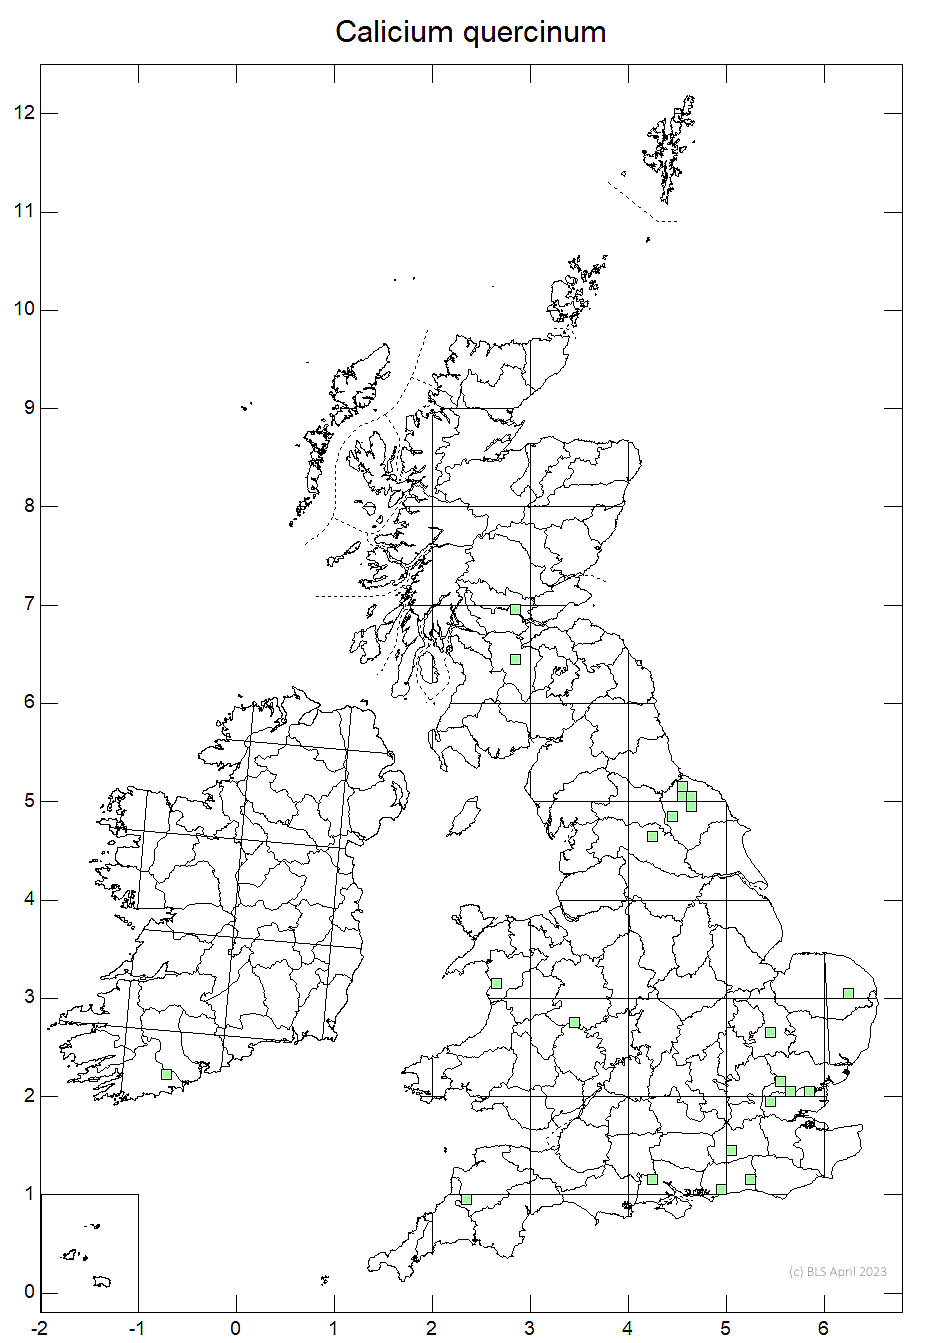 Calicium quercinum 10km sq distribution map